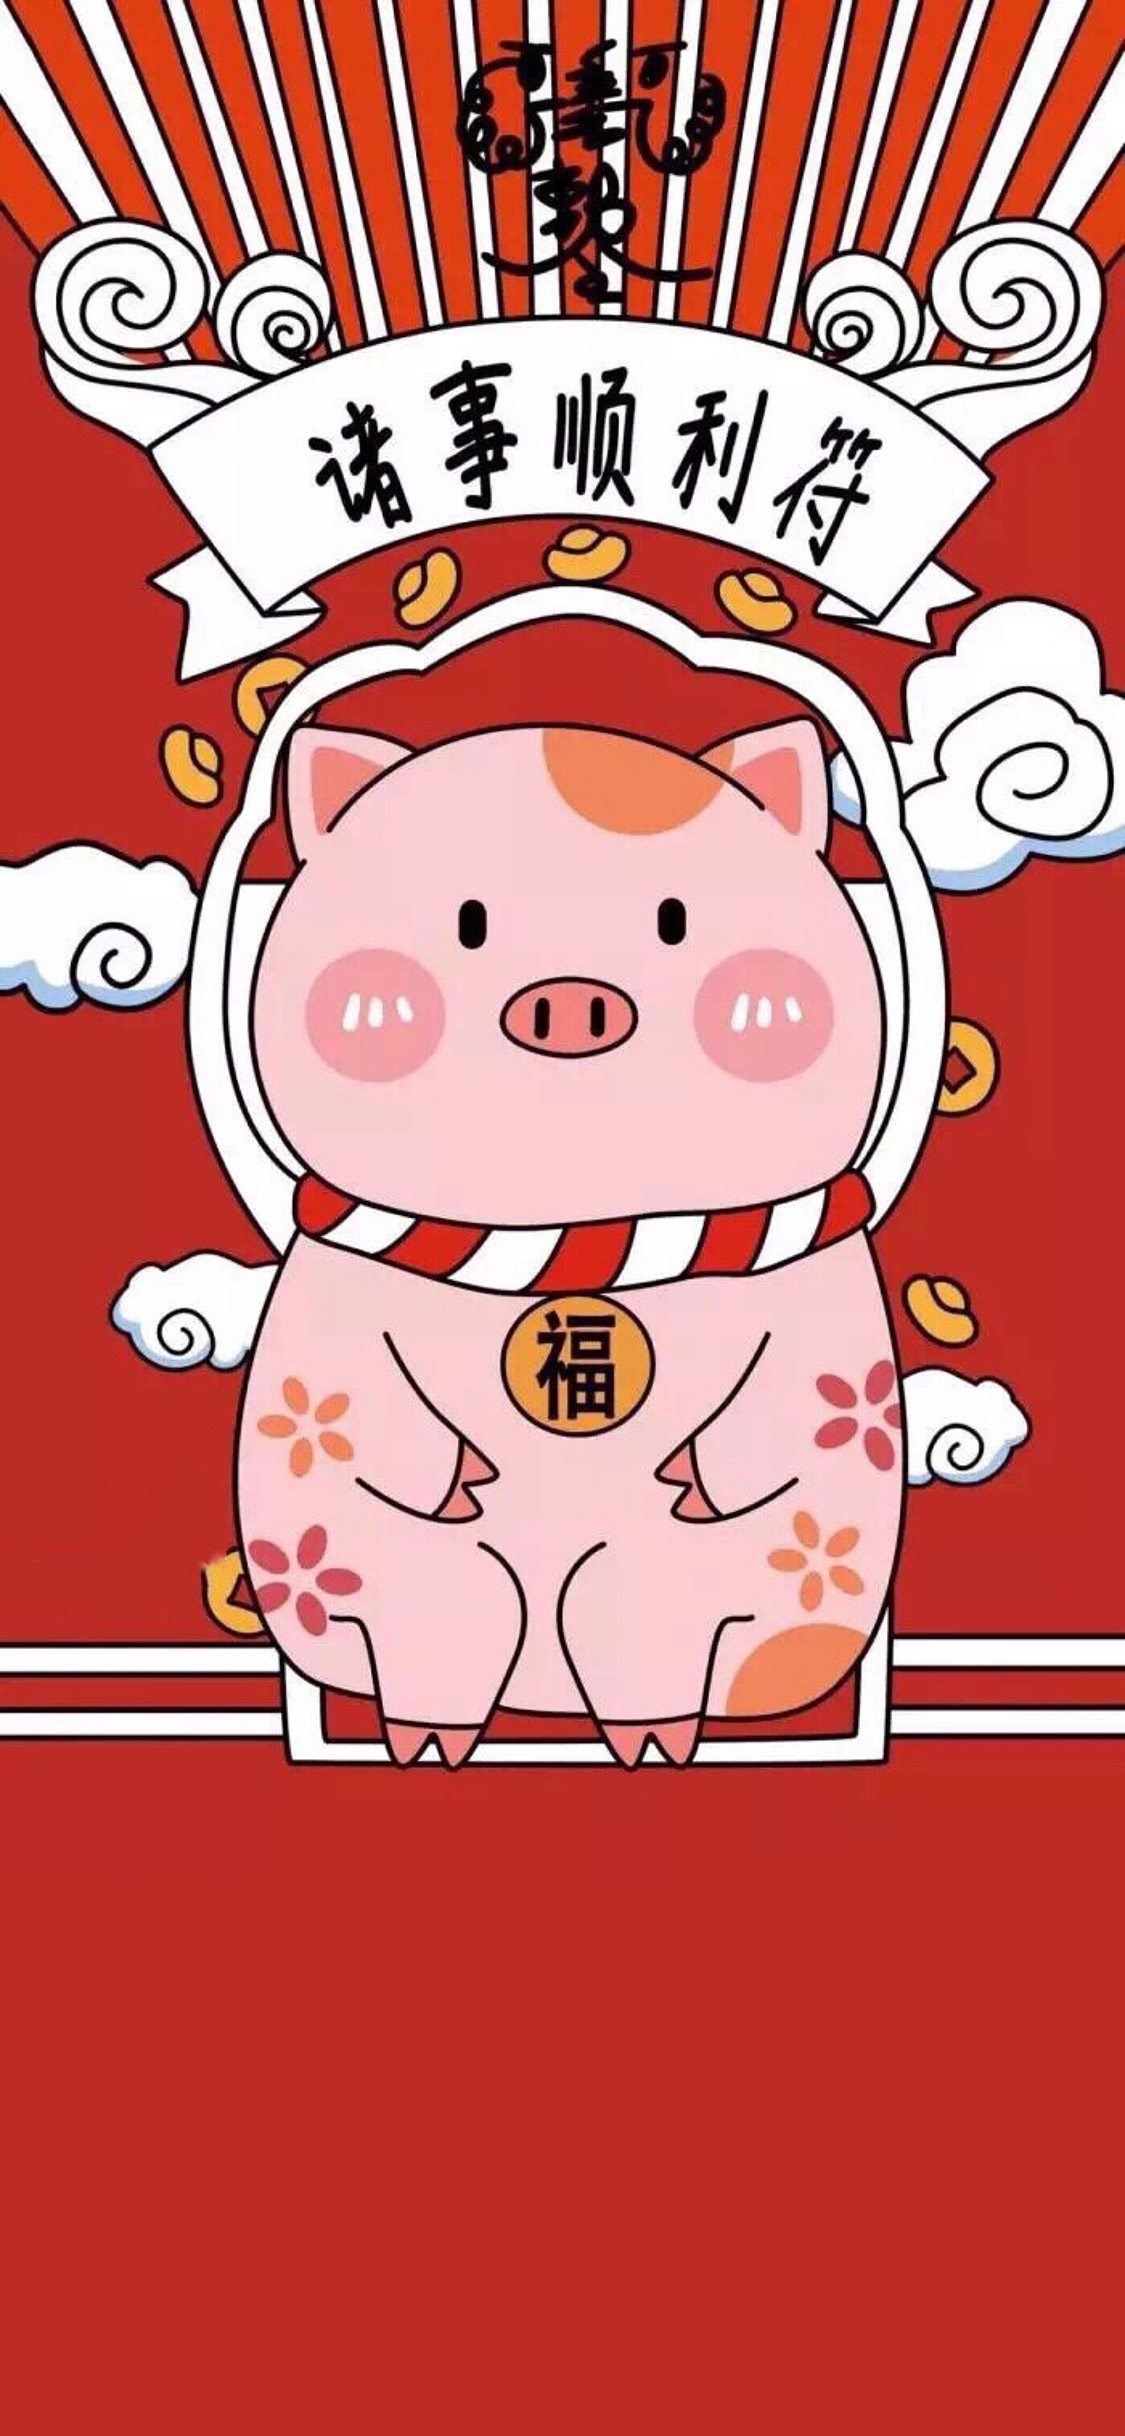 2019猪年红色手机壁纸大全 24张猪年开运手机